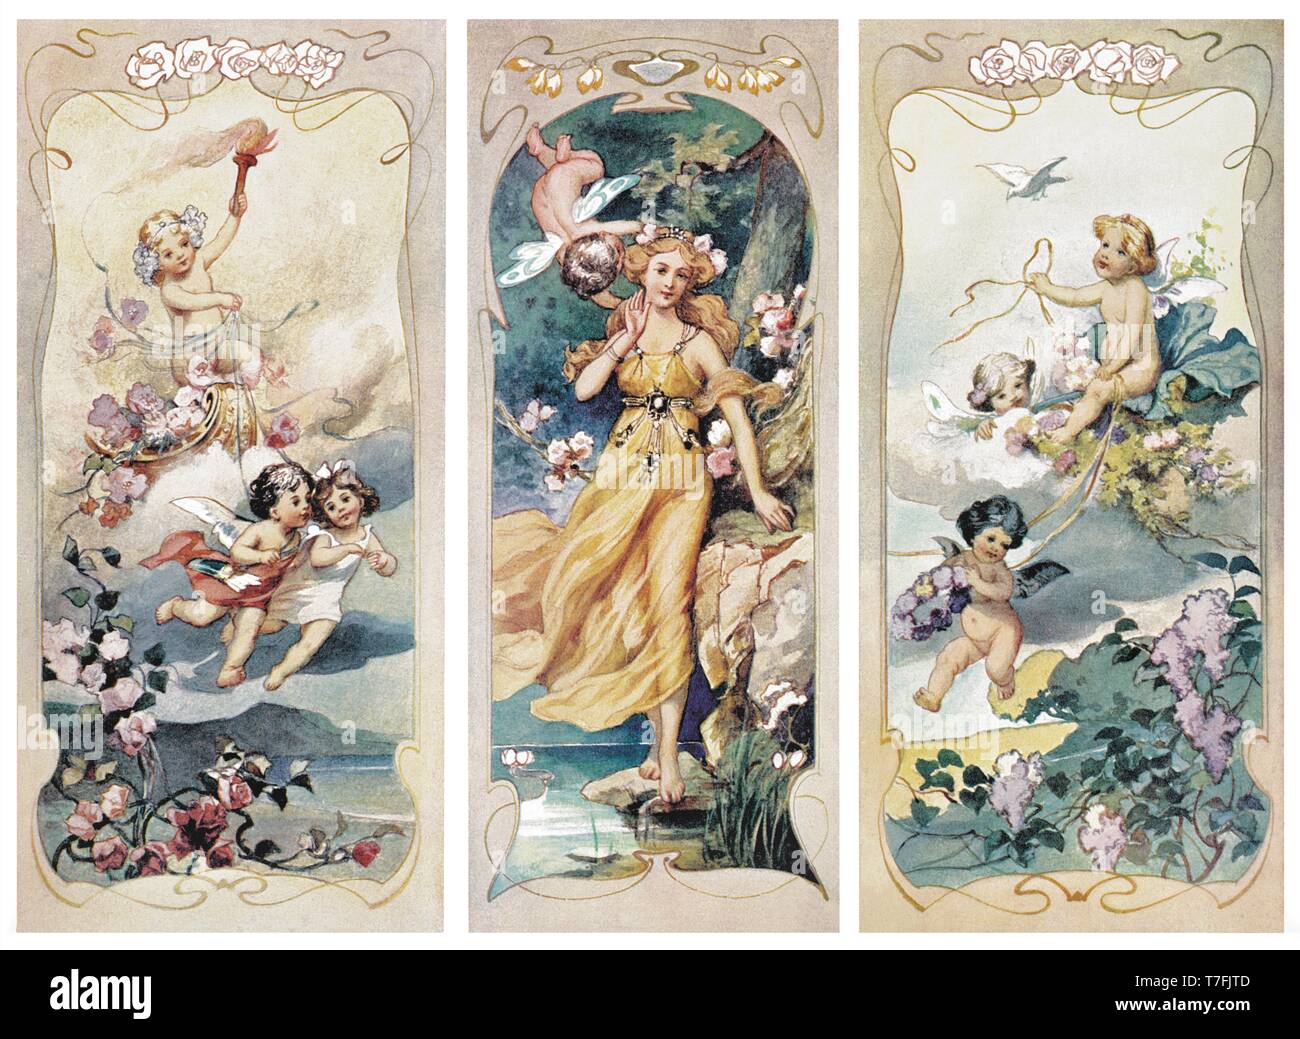 Pittura: pannelli con amorini, ragazza, paesaggi - Vintage illustrazione di quadri figurativi 1910 Foto Stock